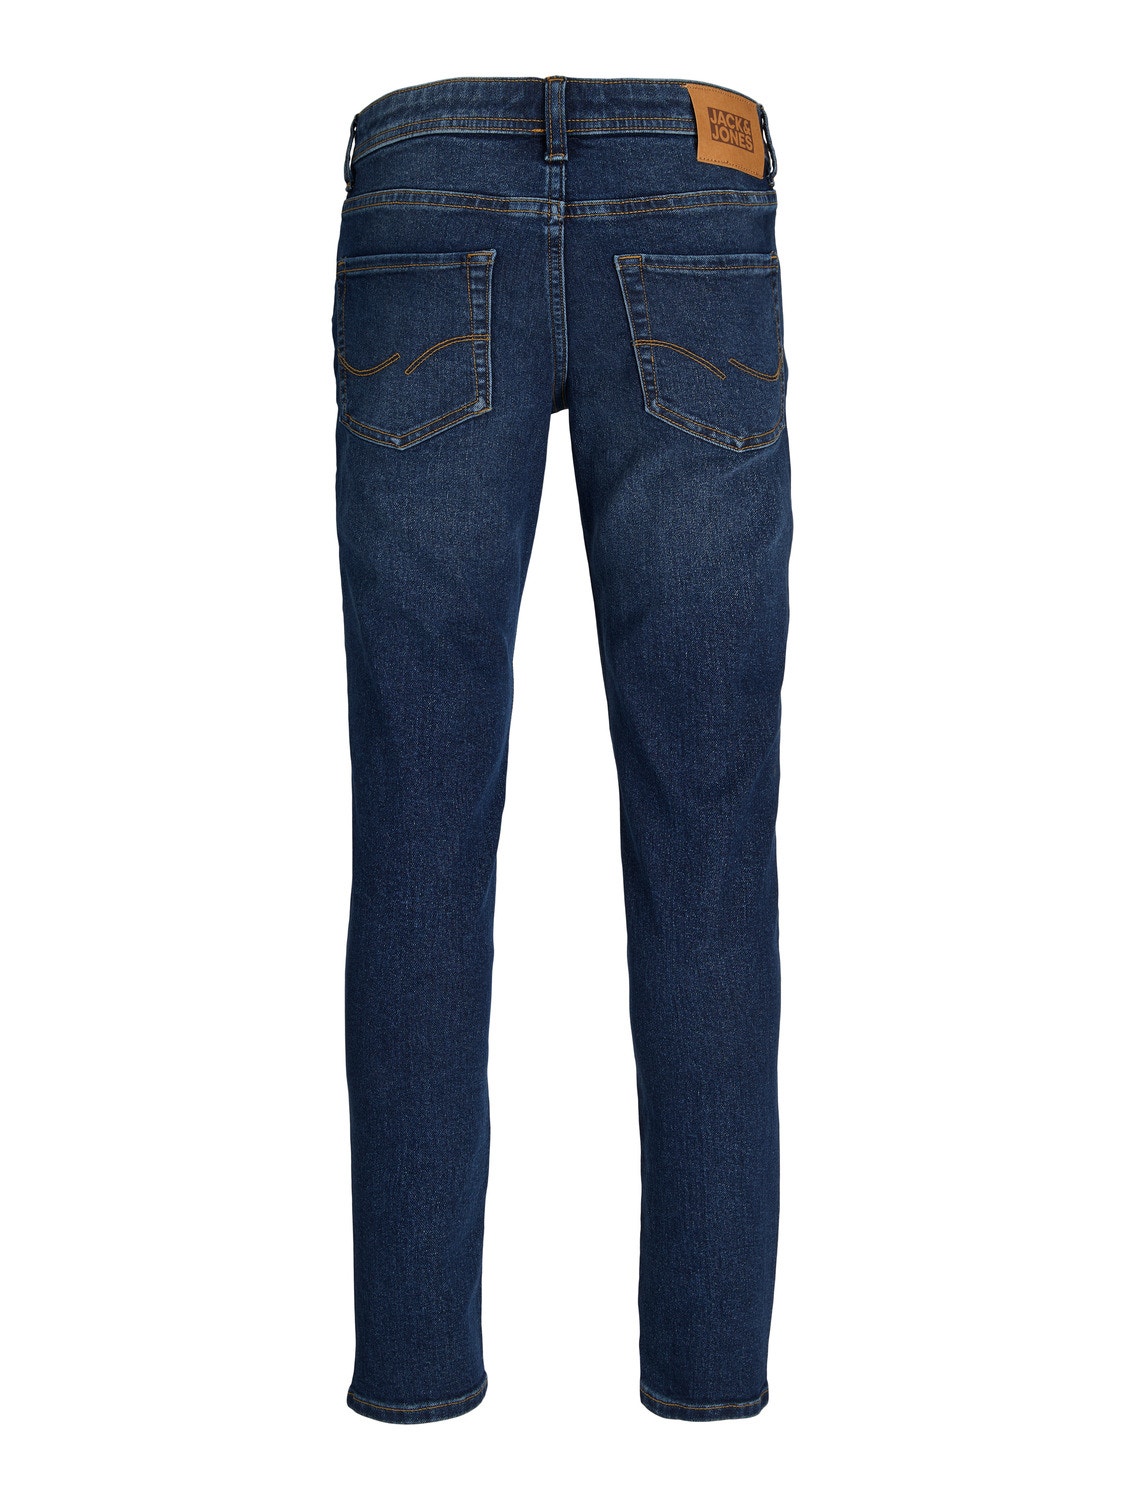 Jack & Jones JJIGLENN JJORIGINAL MF 851 Slim Fit Jeans Für jungs -Blue Denim - 12242716